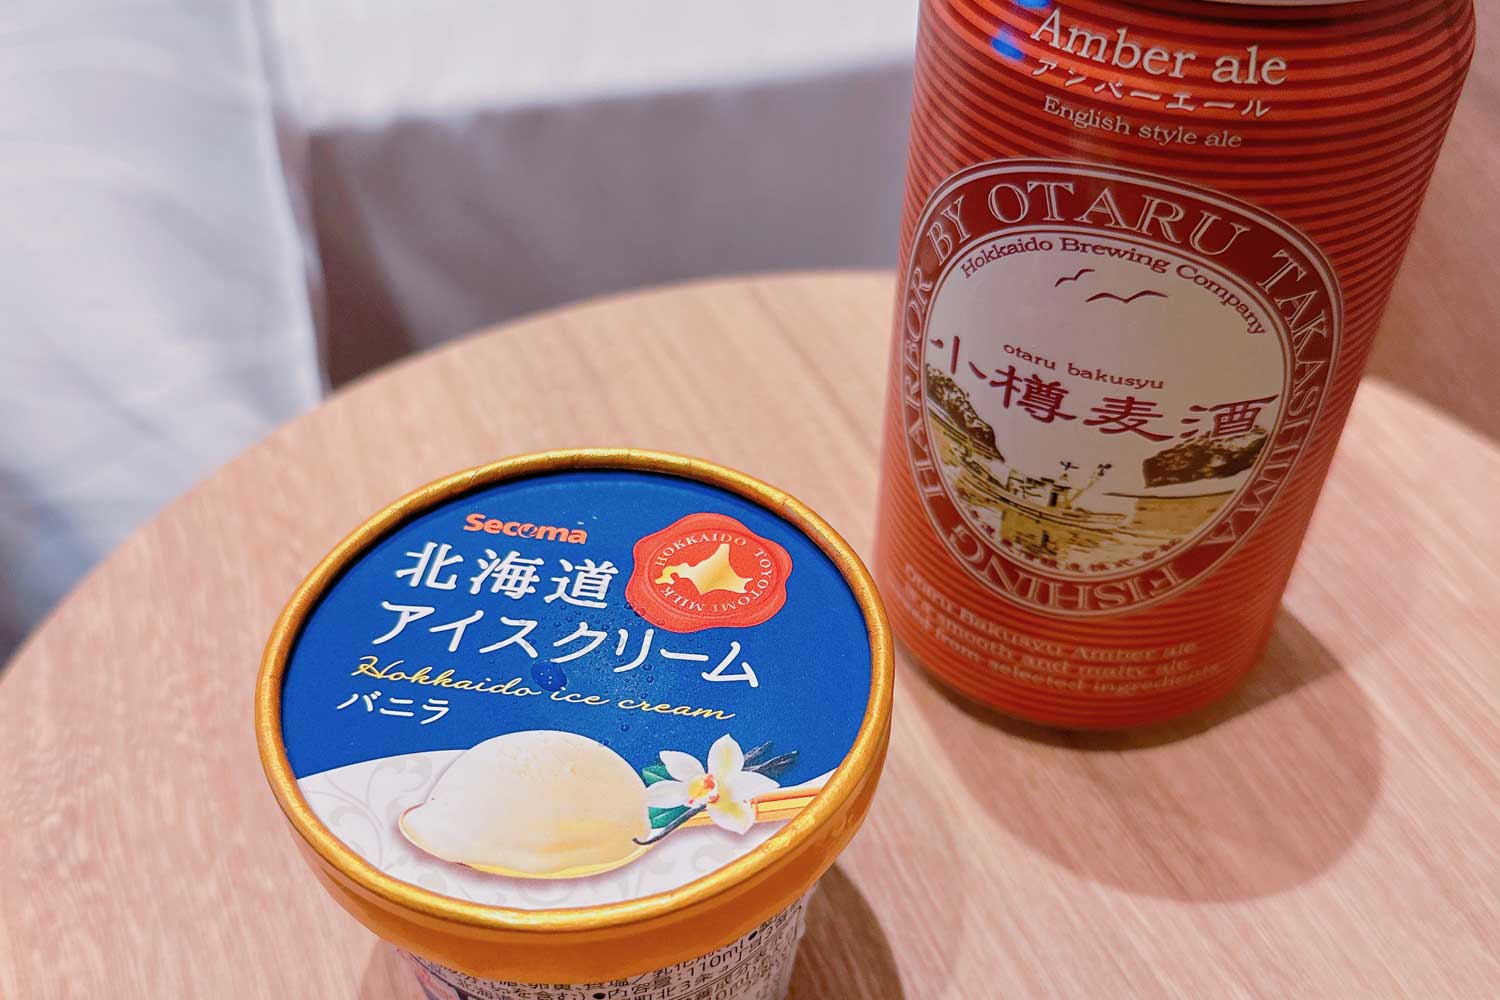 北海道アイスクリームと小樽麦酒アンバーエール